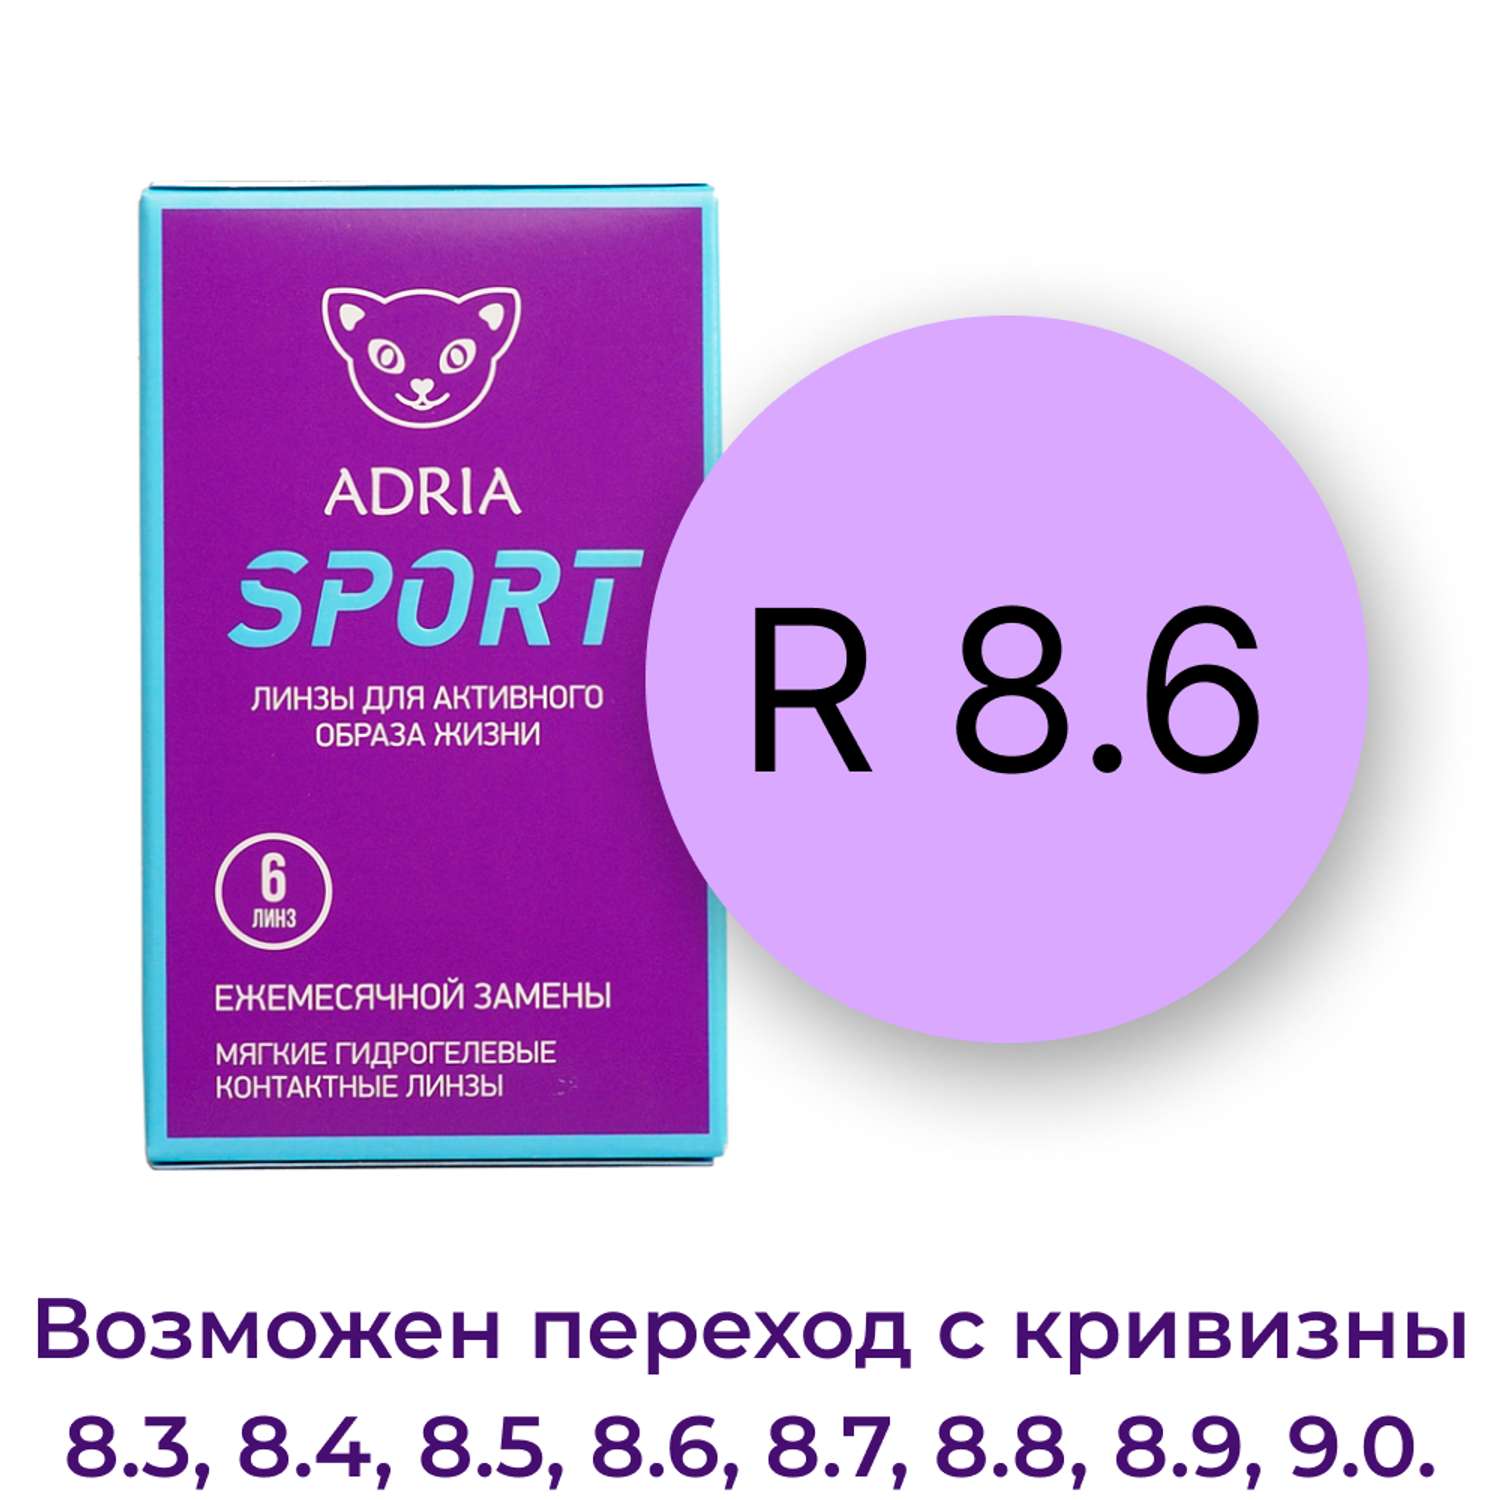 Контактные линзы ADRIA Sport 6 линз R 8.6 -5.50 - фото 3